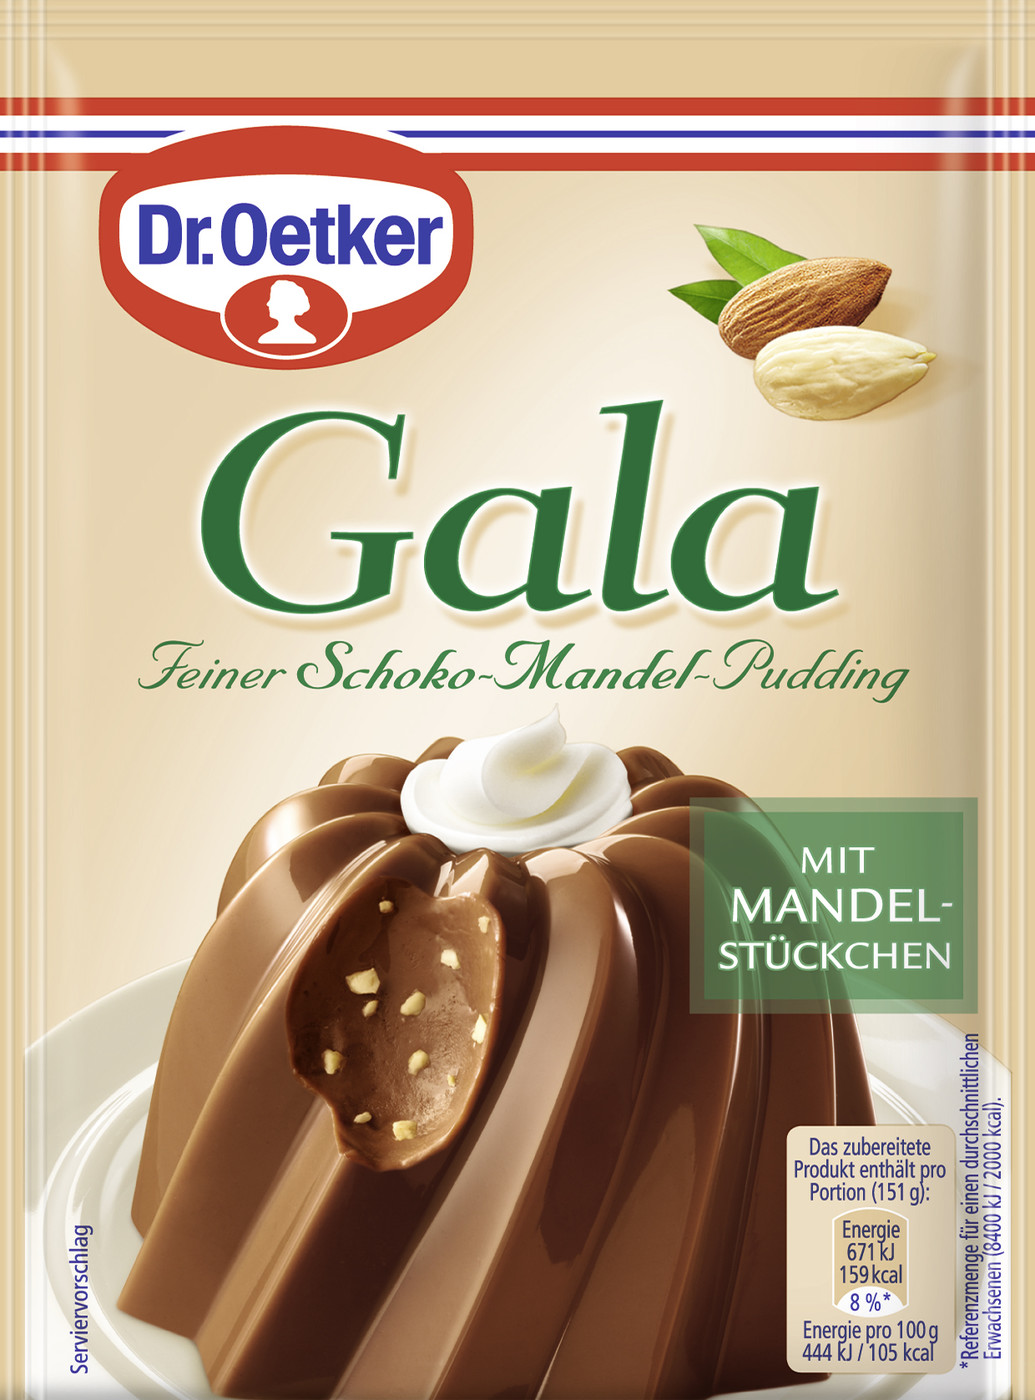 Dr.Oetker Gala Feiner Schoko-Mandel-Pudding 2ST 110G